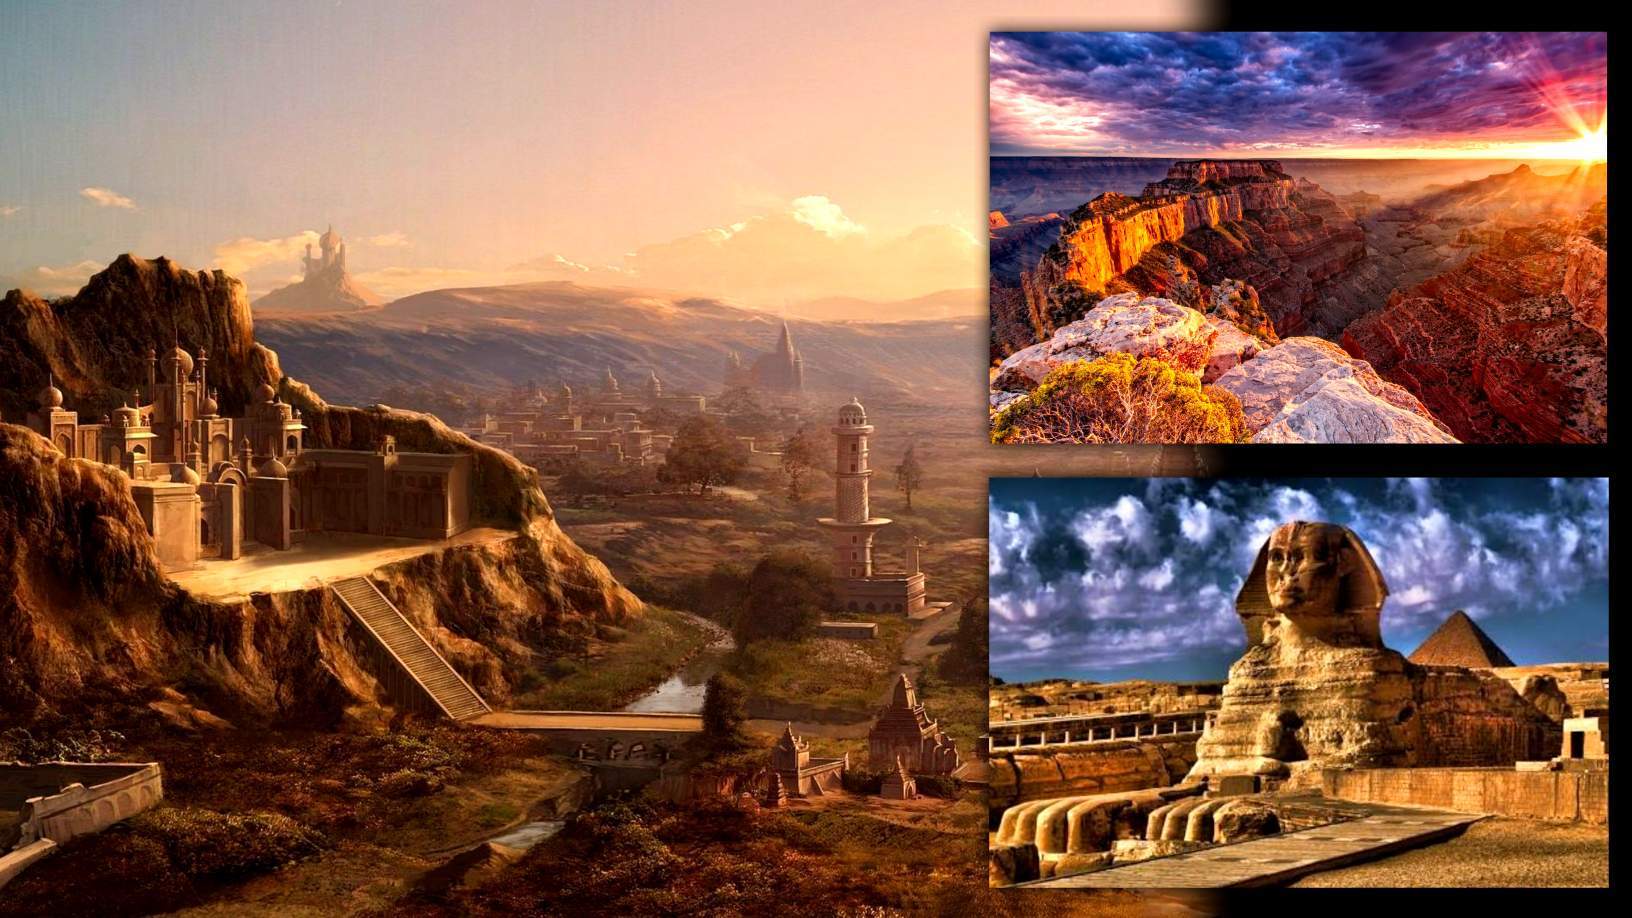 Te tau o te Sphinx: He tangata kua ngaro i muri o nga Pyramids Ihipiana? 2